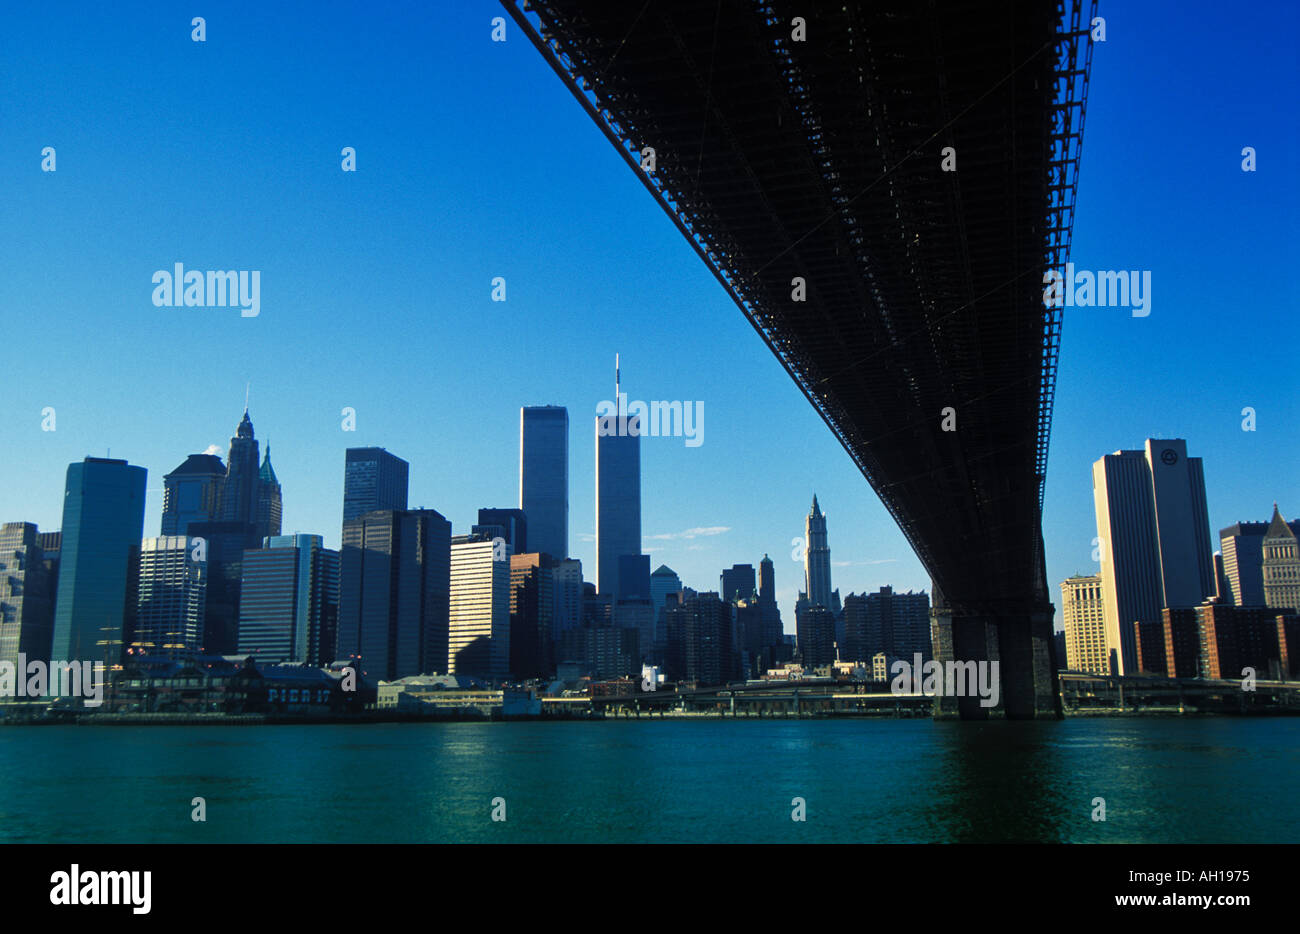 1999 - skyline di Manhattan con torri gemelle distrutte nel 9/11 Da sotto il ponte di Brooklyn New York USA stati uniti dell'america Foto Stock